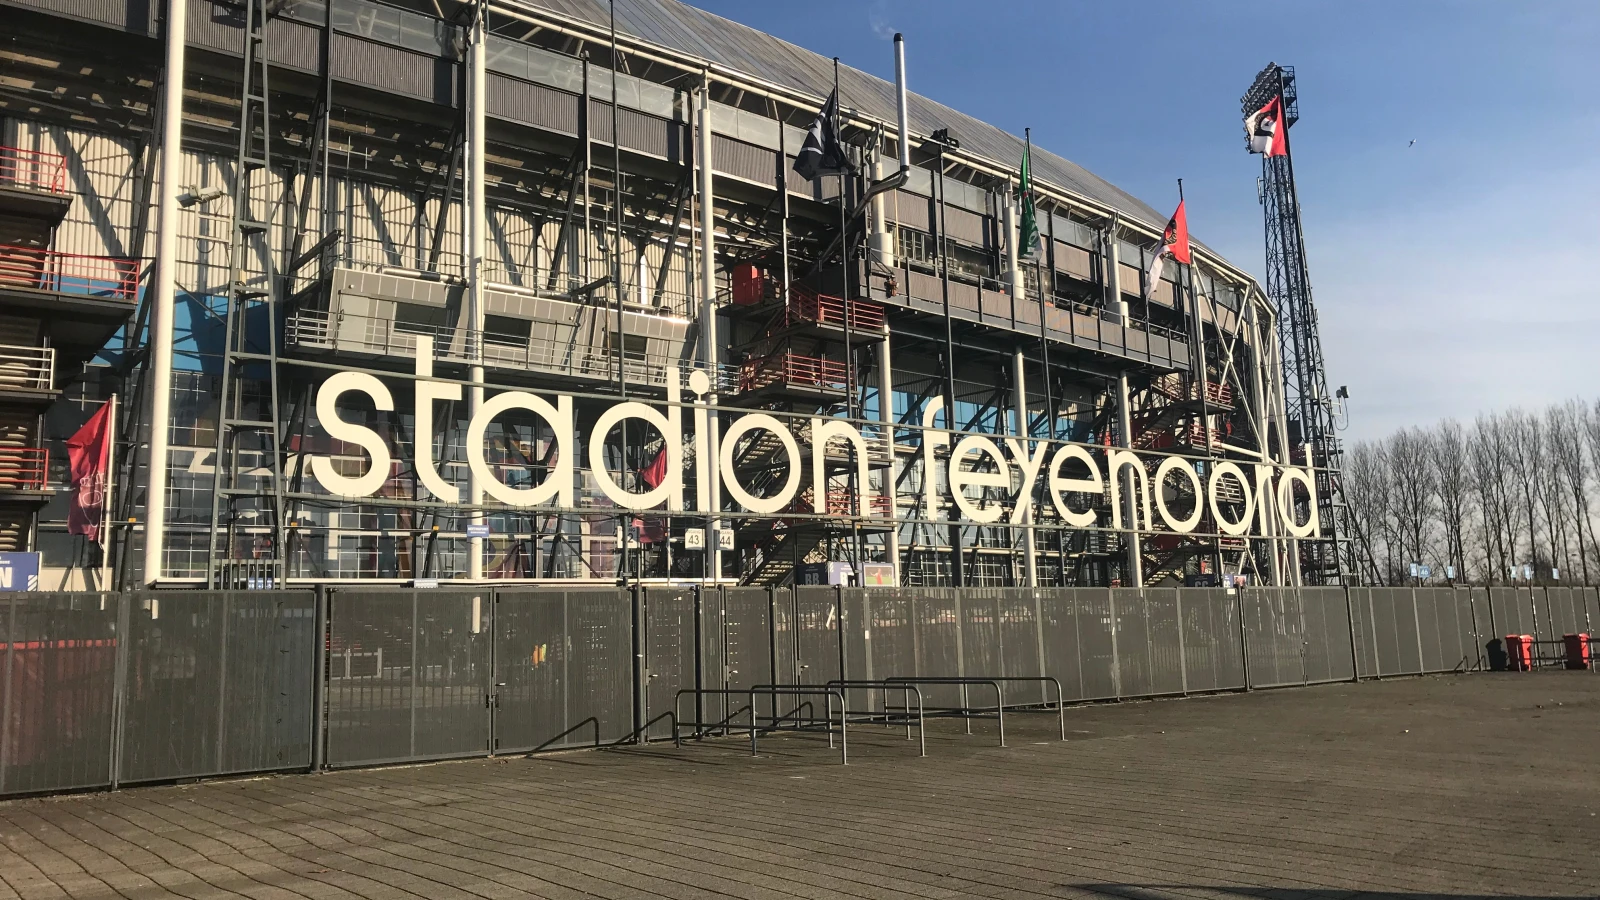 Kaartverkoop voor thuiswedstrijd tegen PSV start zaterdag